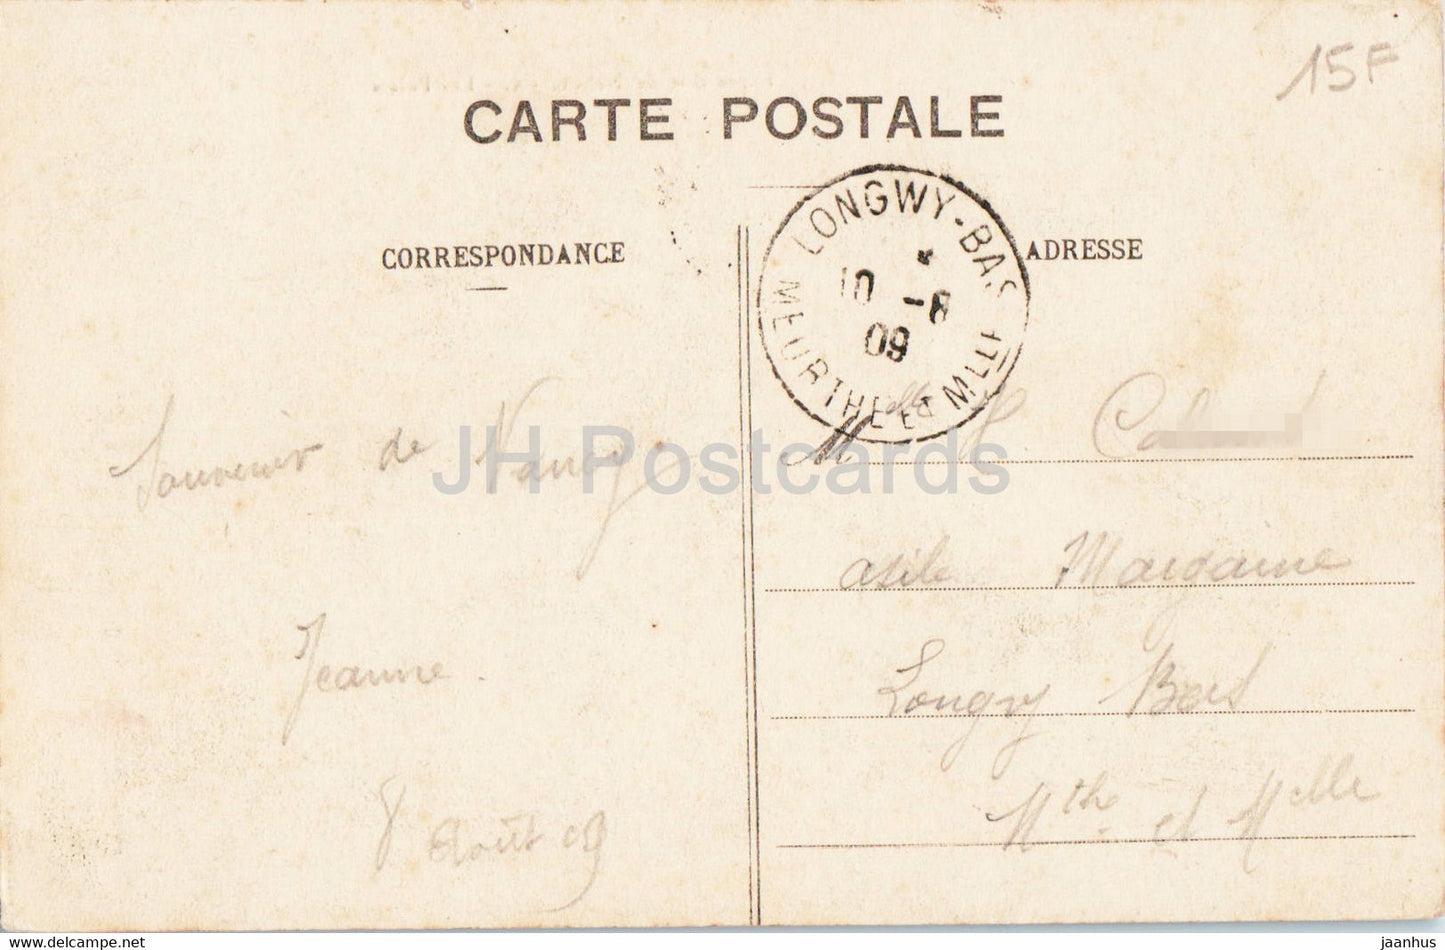 Exposition de Nancy - Les Palais - 5 - old postcard - 1909 - France - used